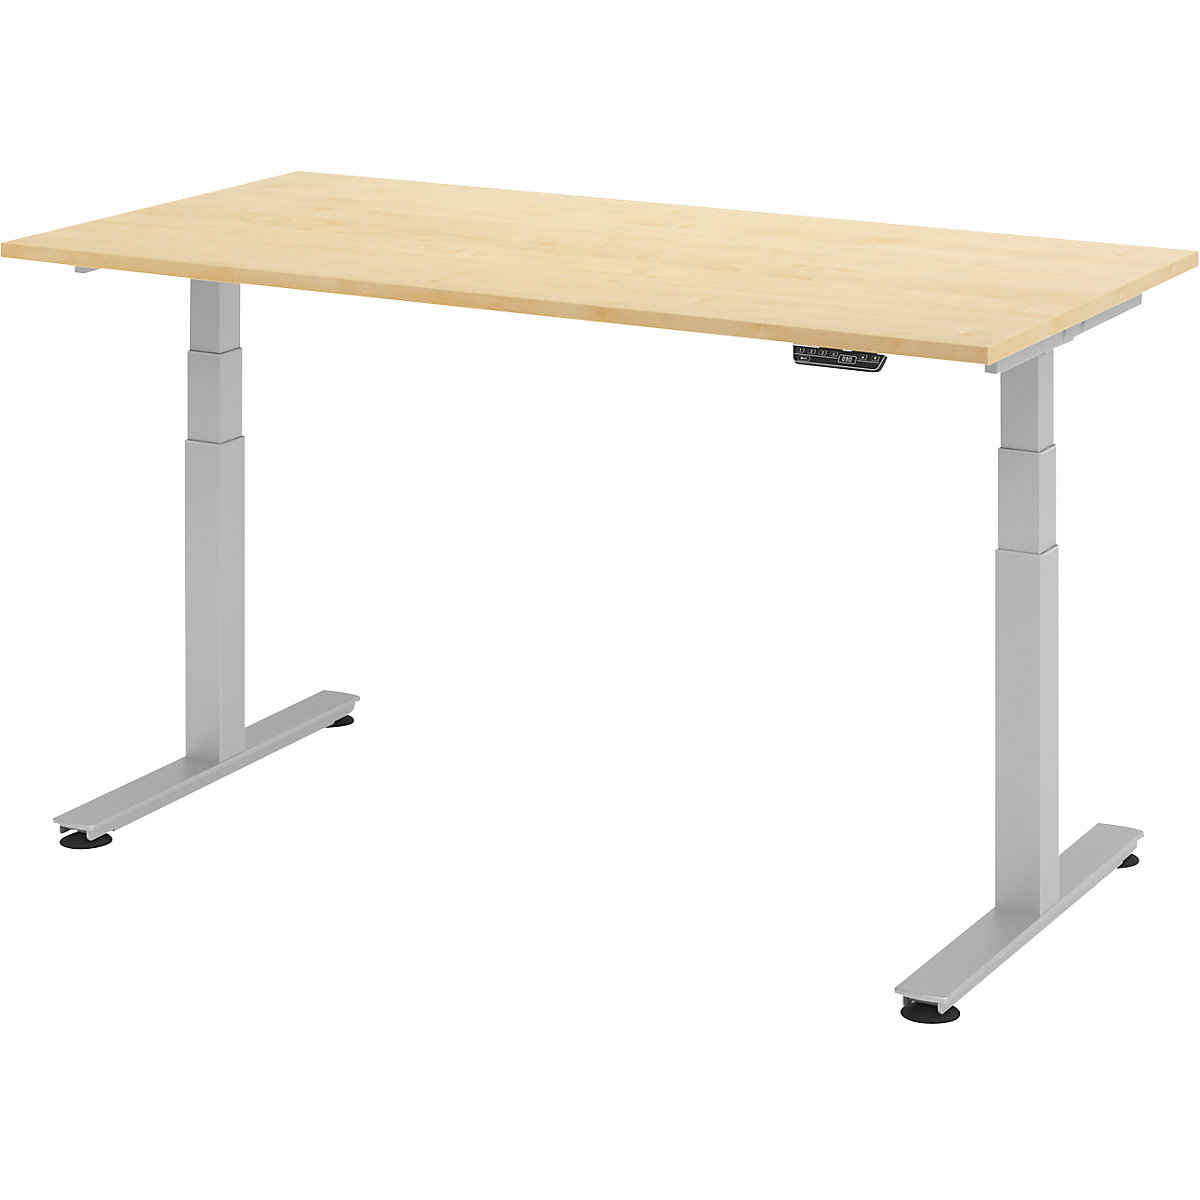 Sta-bureautafel, elektrisch in hoogte verstelbaar UPLINER-2.0, recht, b x d = 1600 x 800 mm, ahornhout-11